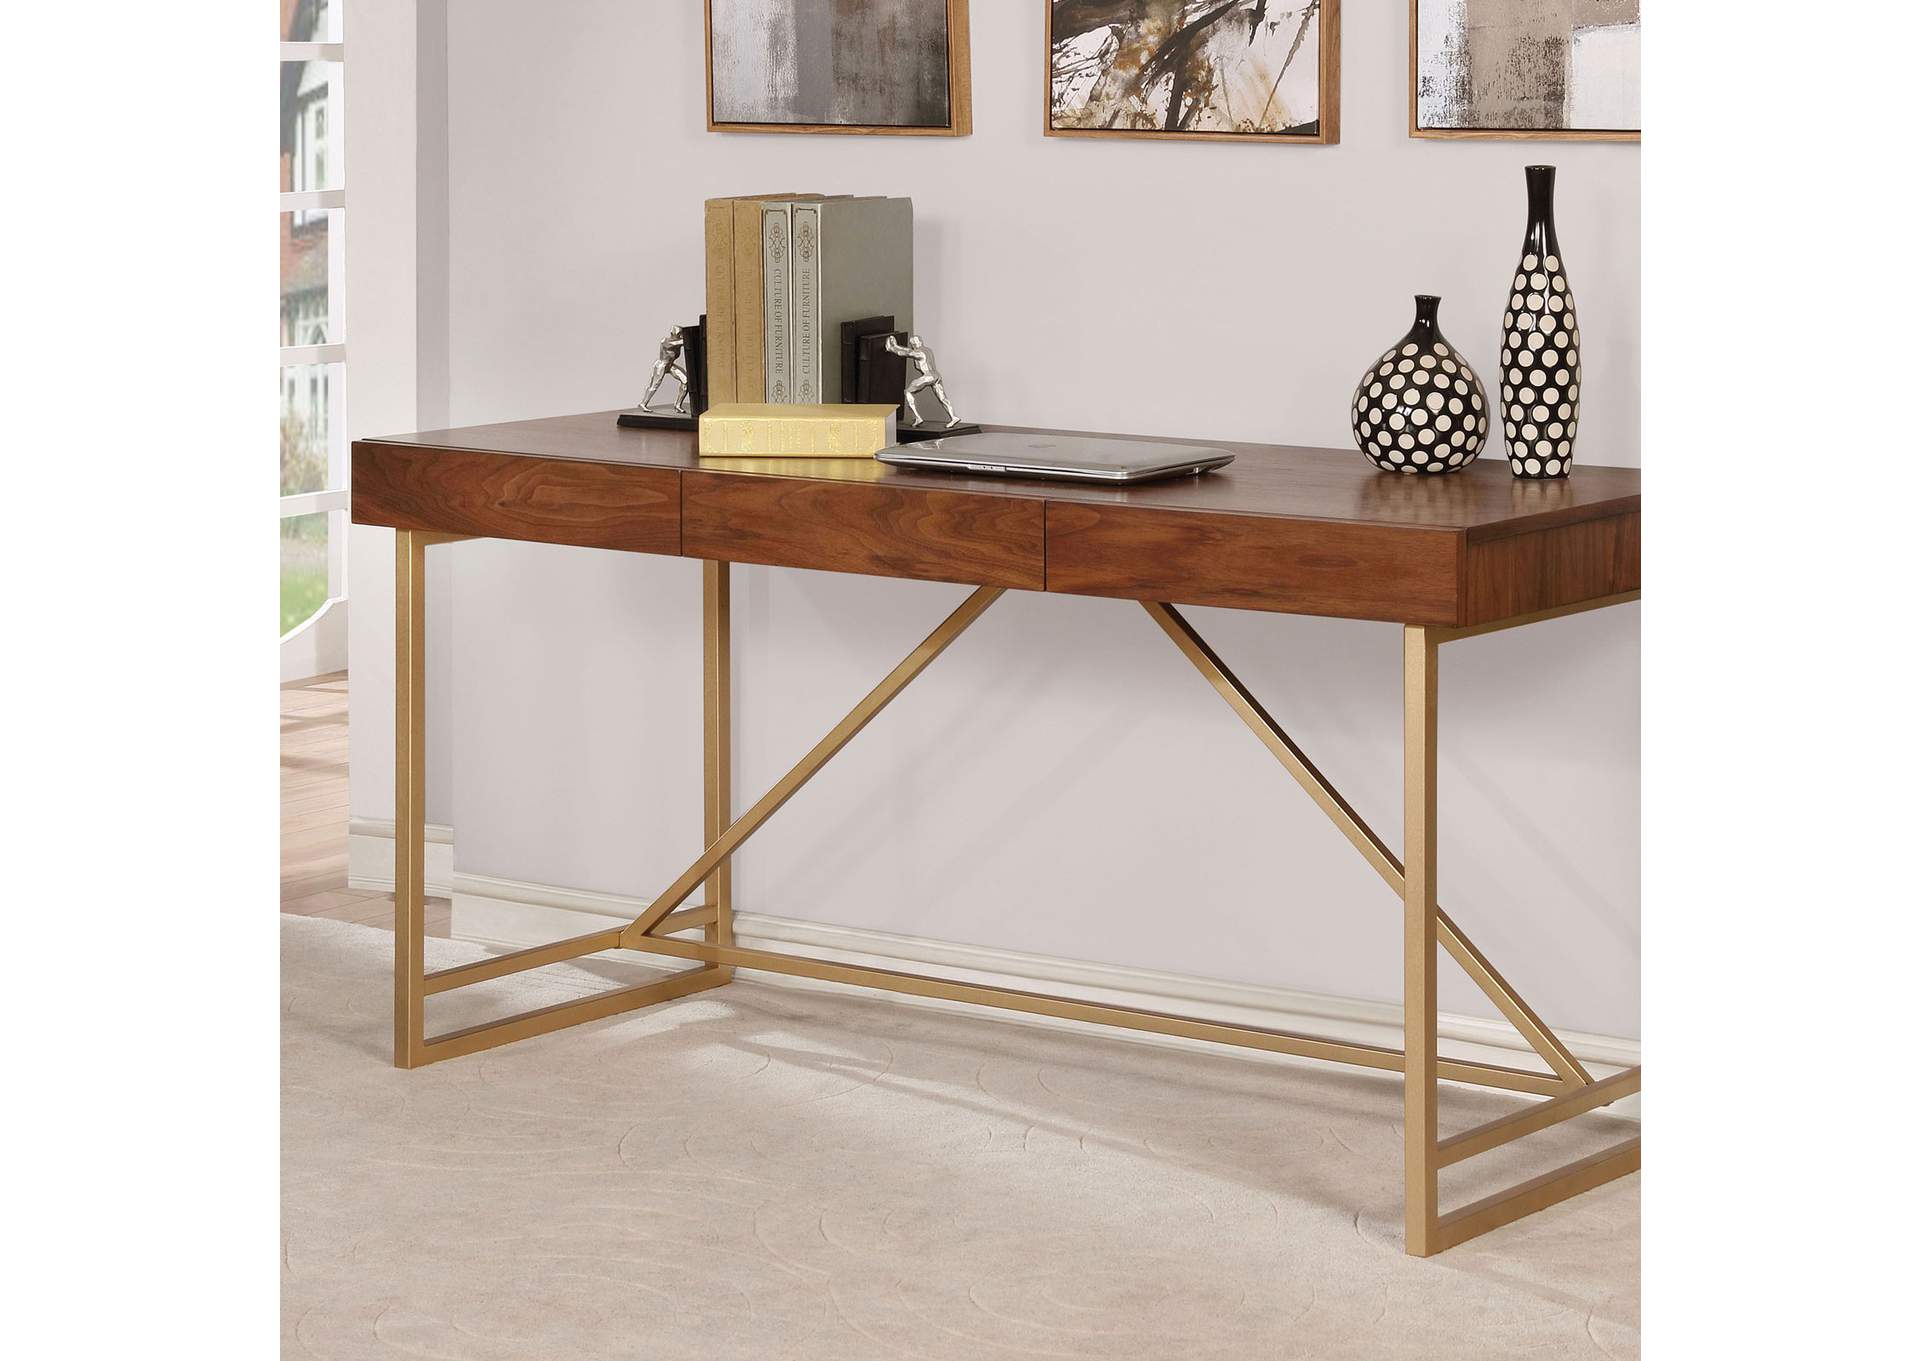 Halstein Desk,Furniture of America